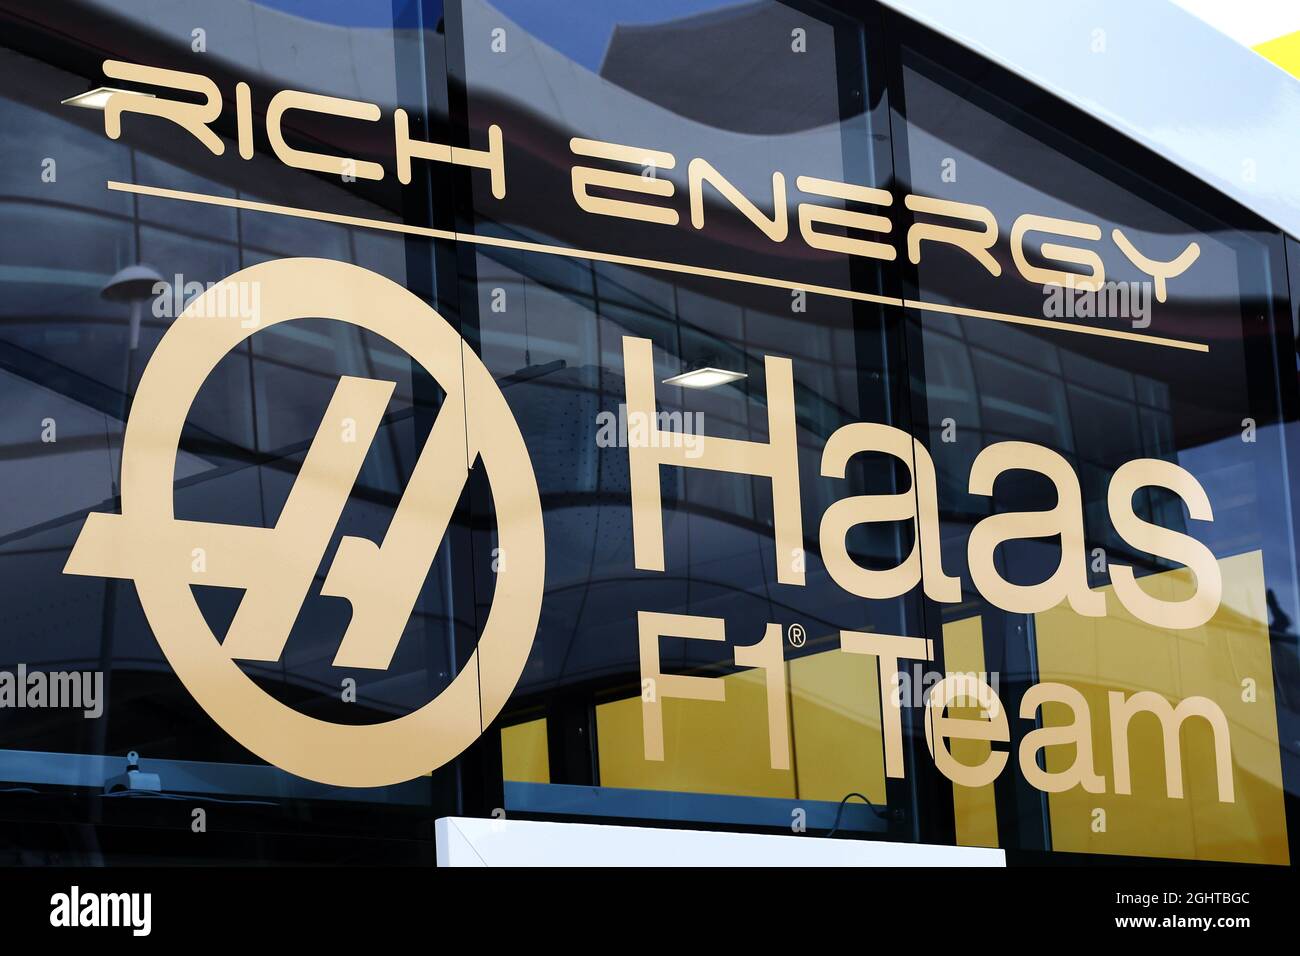 Logo de l'écurie Haas F1 Team avec la marque Rich Energy. 11.07.2019. Championnat du monde de Formule 1, Rd 10, Grand Prix de Grande-Bretagne, Silverstone, Angleterre, Journée de préparation. Le crédit photo doit être lu : images XPB/Press Association. Banque D'Images